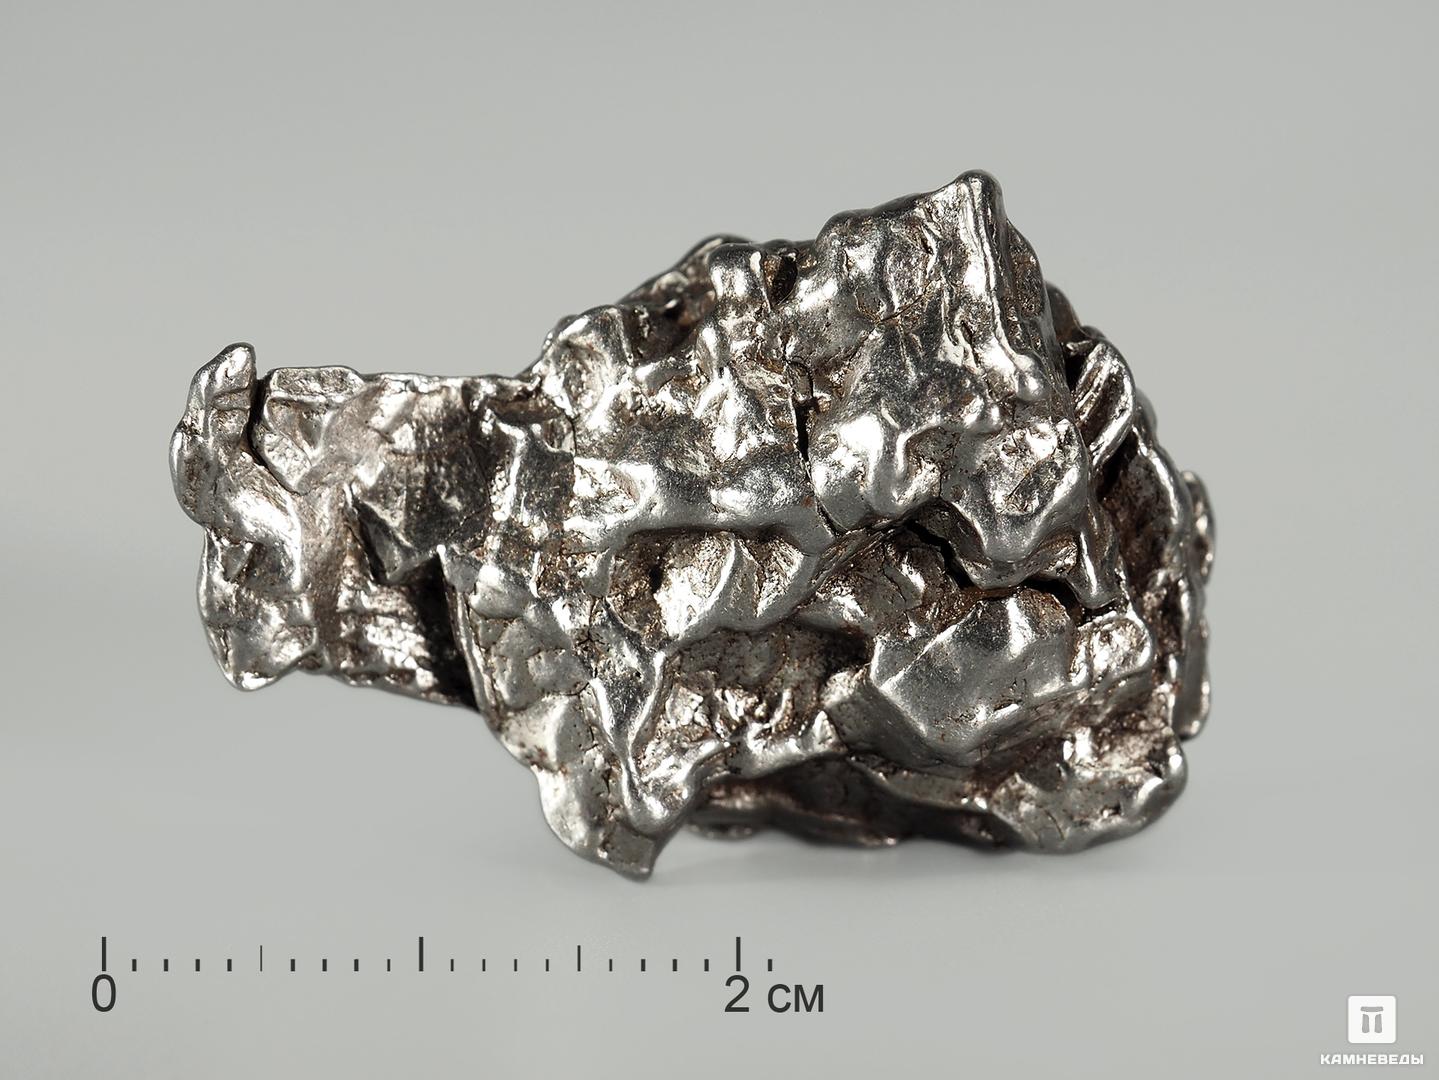 Метеорит Кампо-дель-Сьело, осколок 2,5-3,5 см (21-23 г)